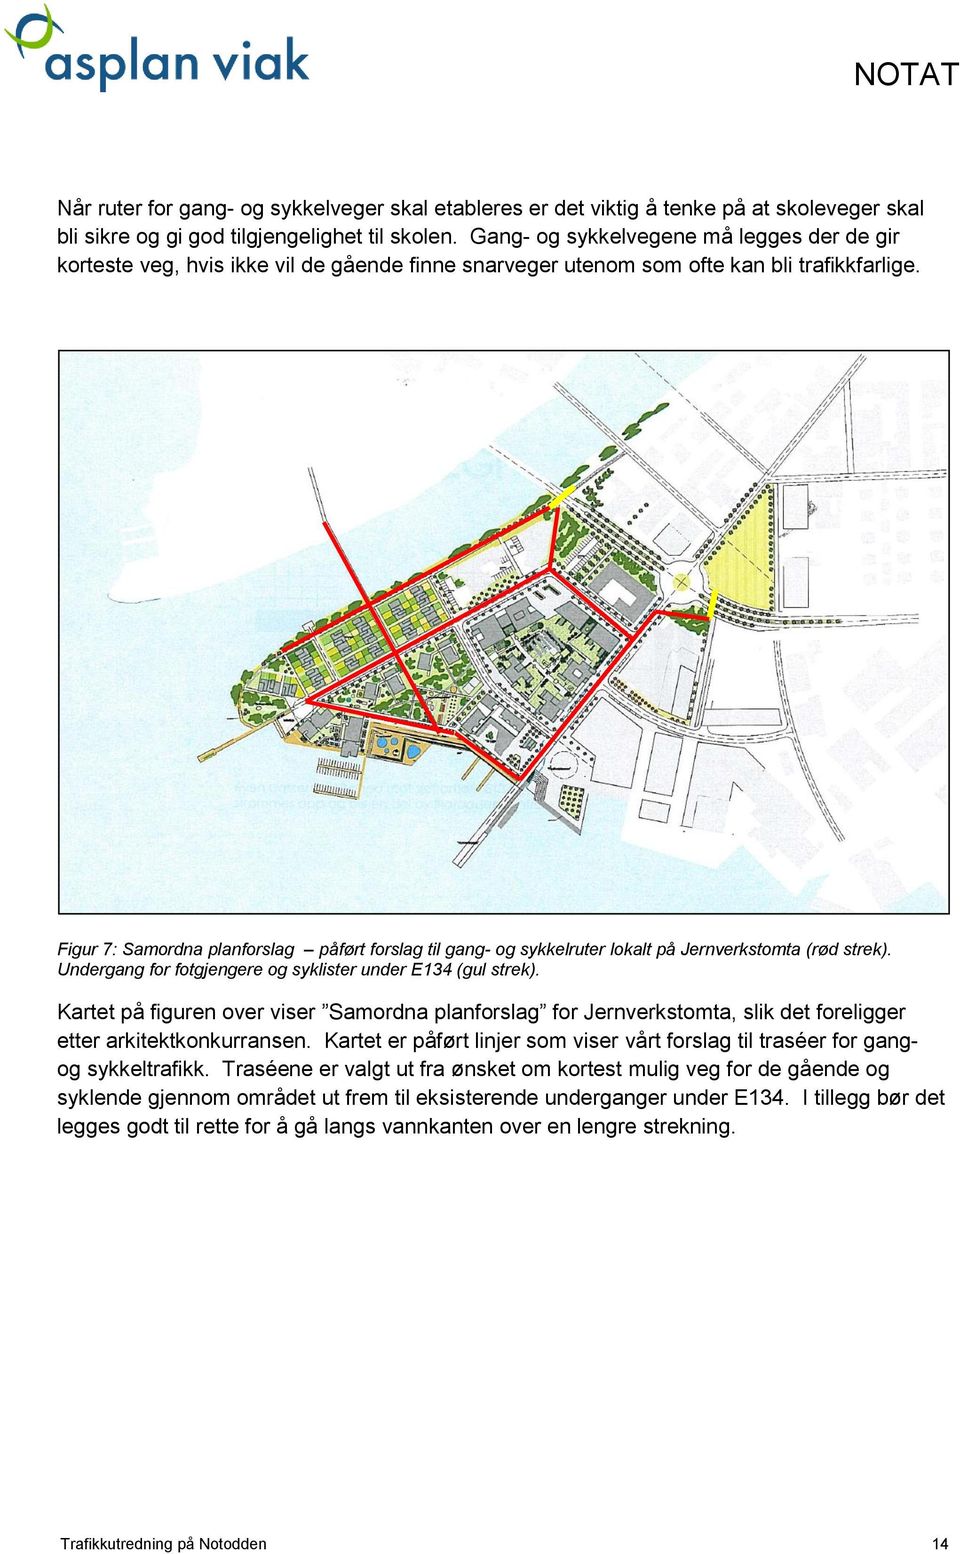 Figur 7: Samordna planforslag påført forslag til gang- og sykkelruter lokalt på Jernverkstomta (rød strek). Undergang for fotgjengere og syklister under E134 (gul strek).